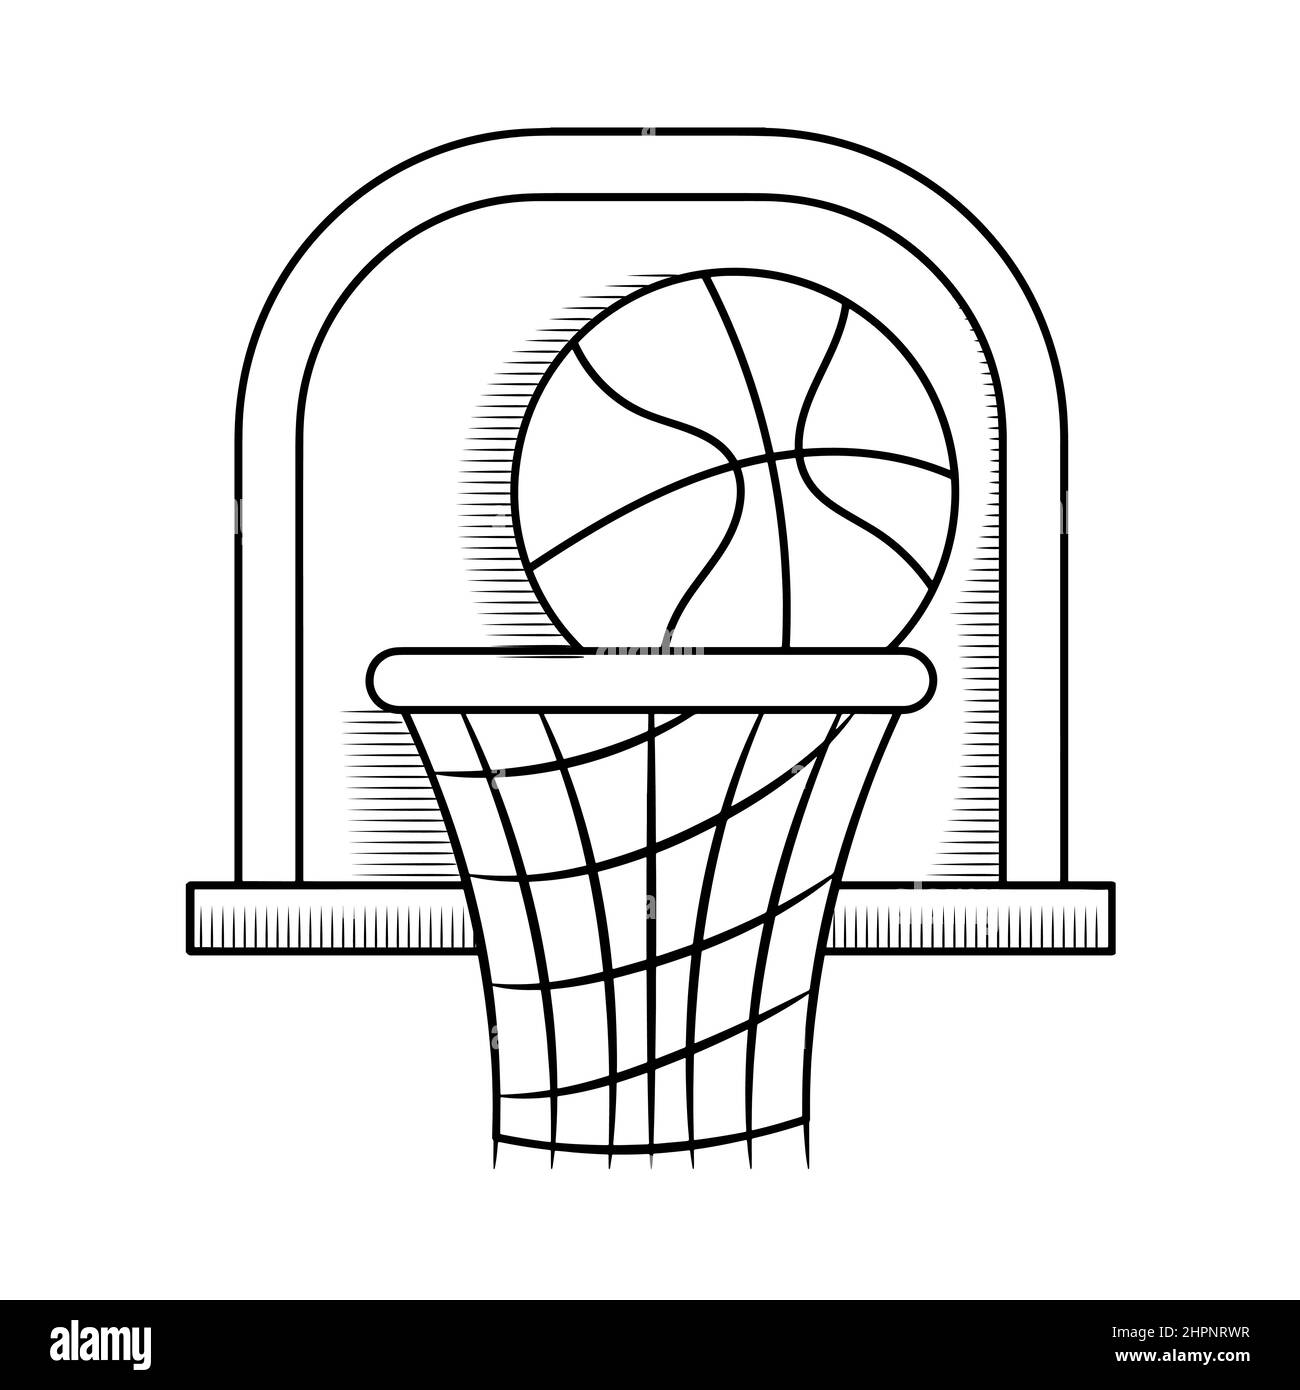 Handgezeichnete Basketball-Doodle-Illustration mit Umriss-Design Stock Vektor